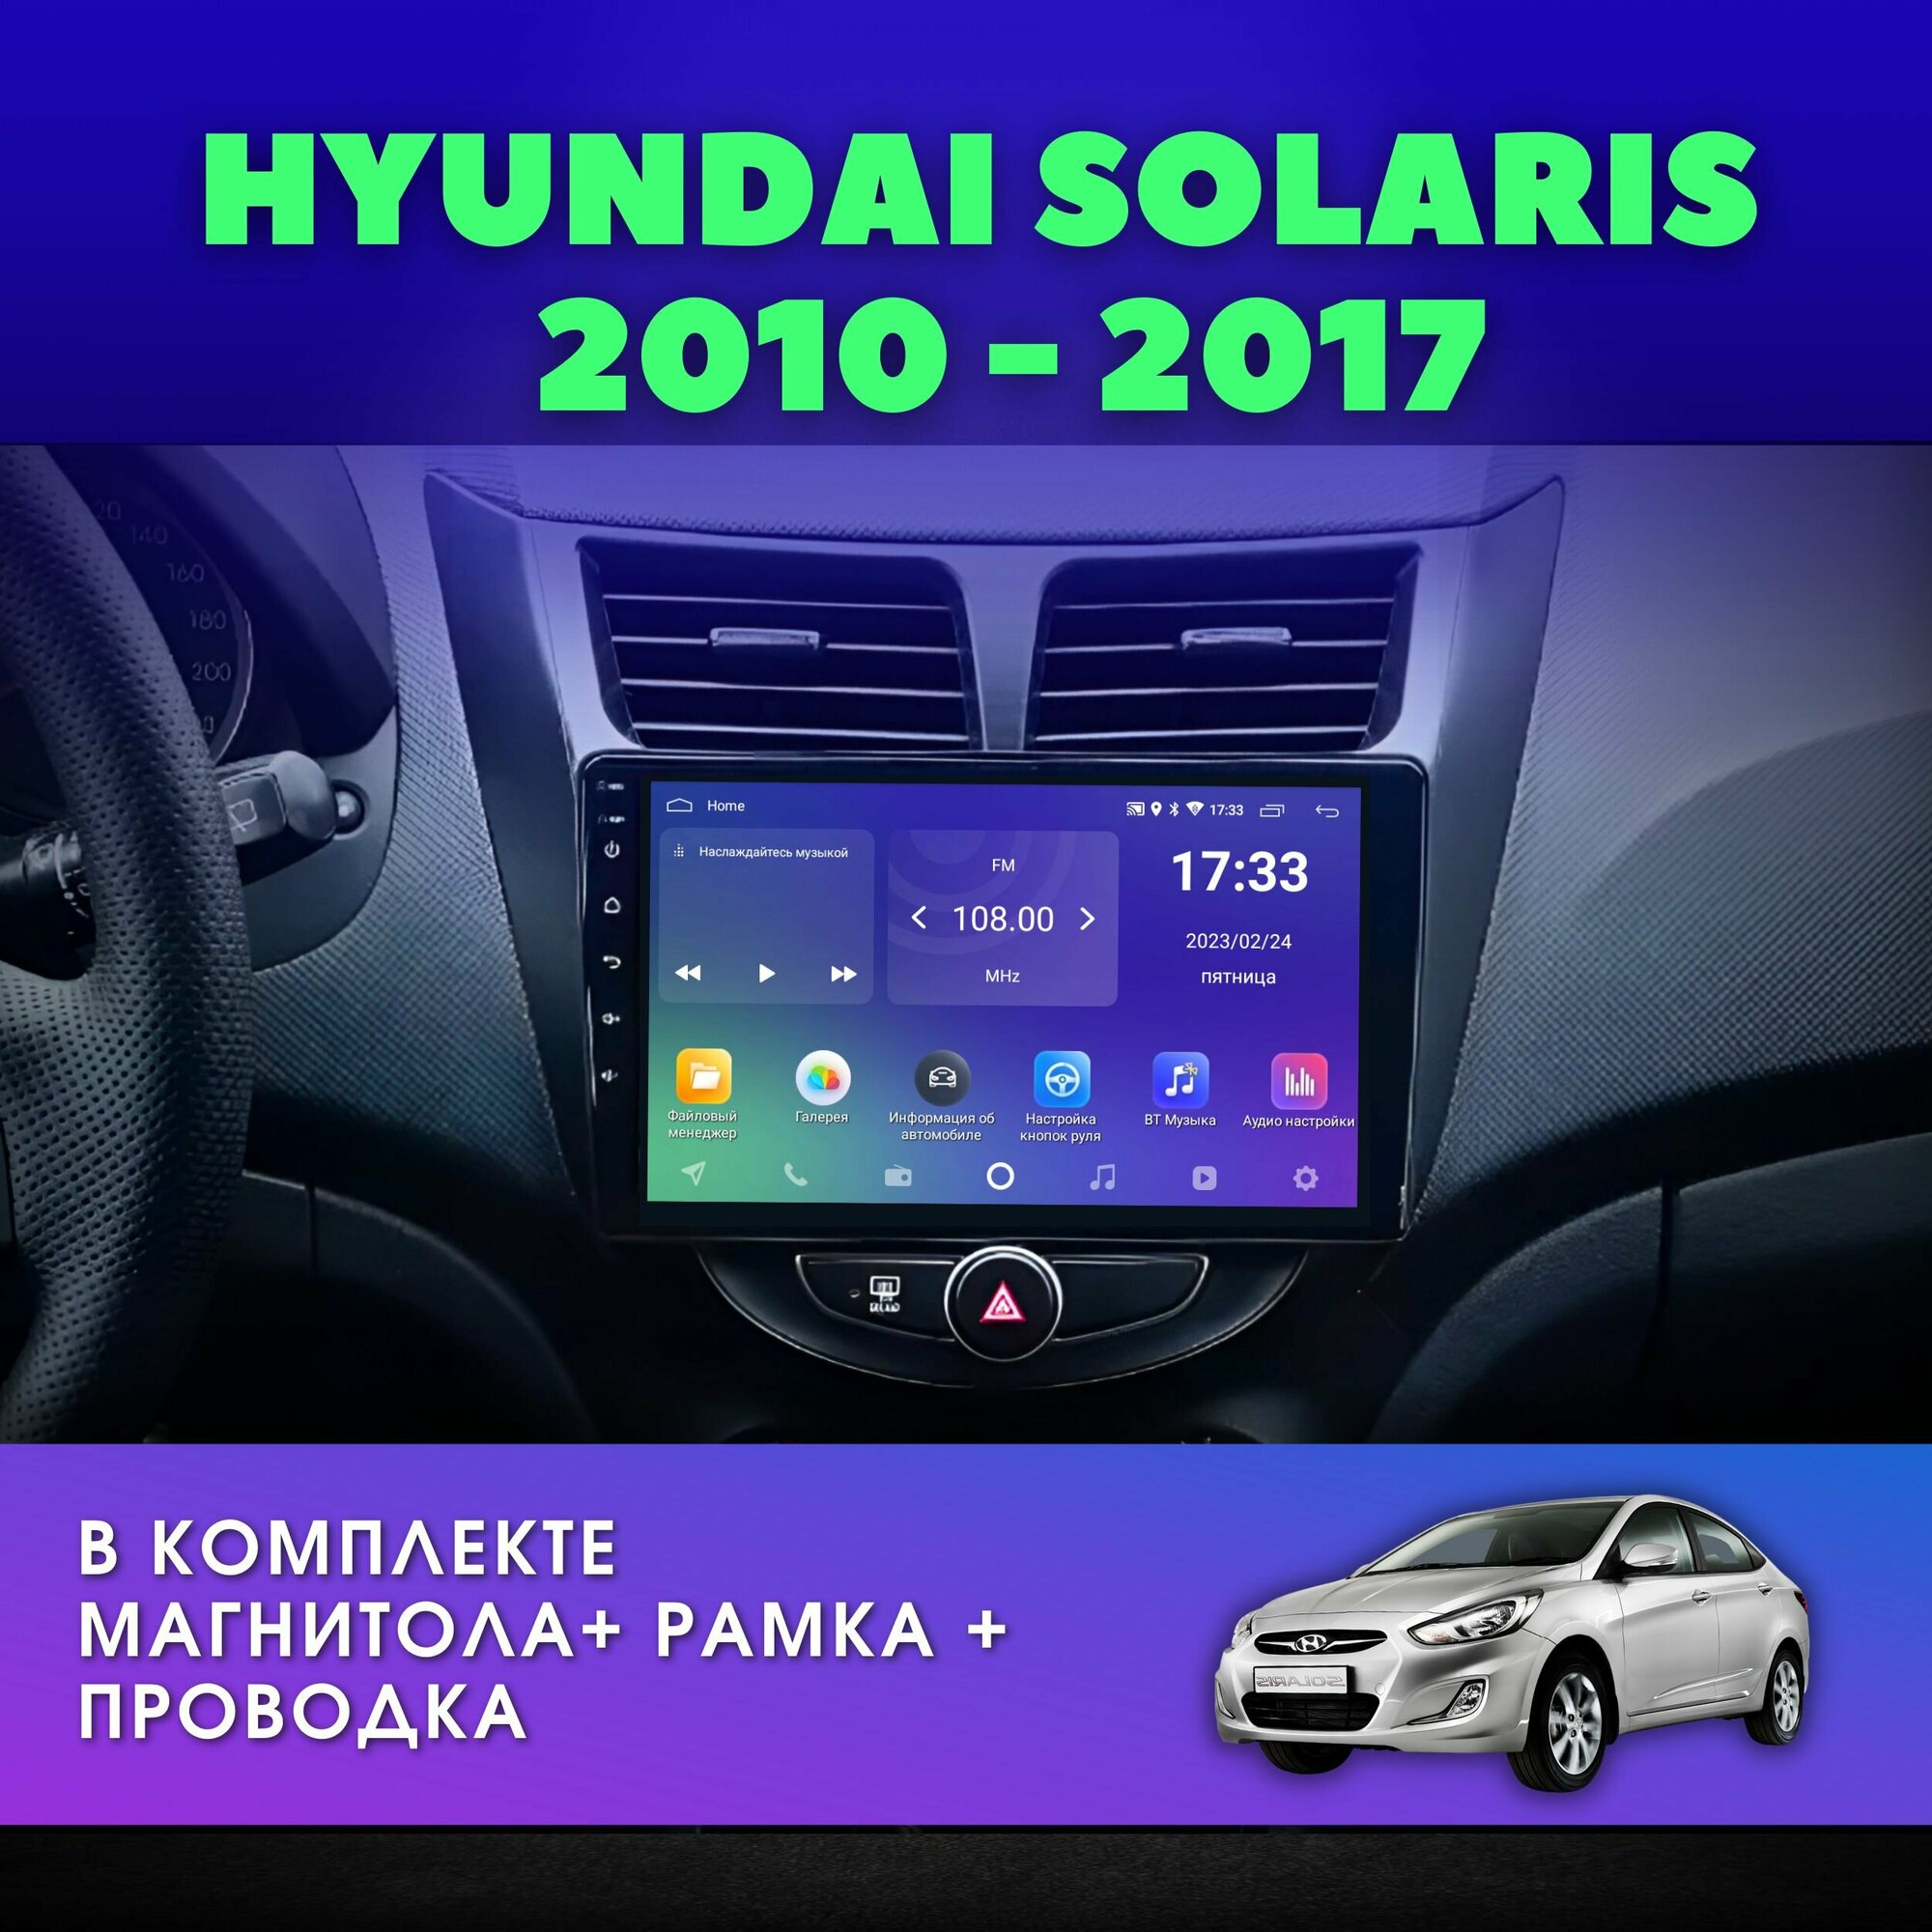 Автомагнитола для Хендай Солярис 2010-2017 / 2Gb+32Gb / Android / 9" дюймов / 2DIN / IPS-экран / HYUNDAI SOLARIS / DODGE ATTITUDE 2011-2014 / Штатная андроид магнитола для авто / Черный